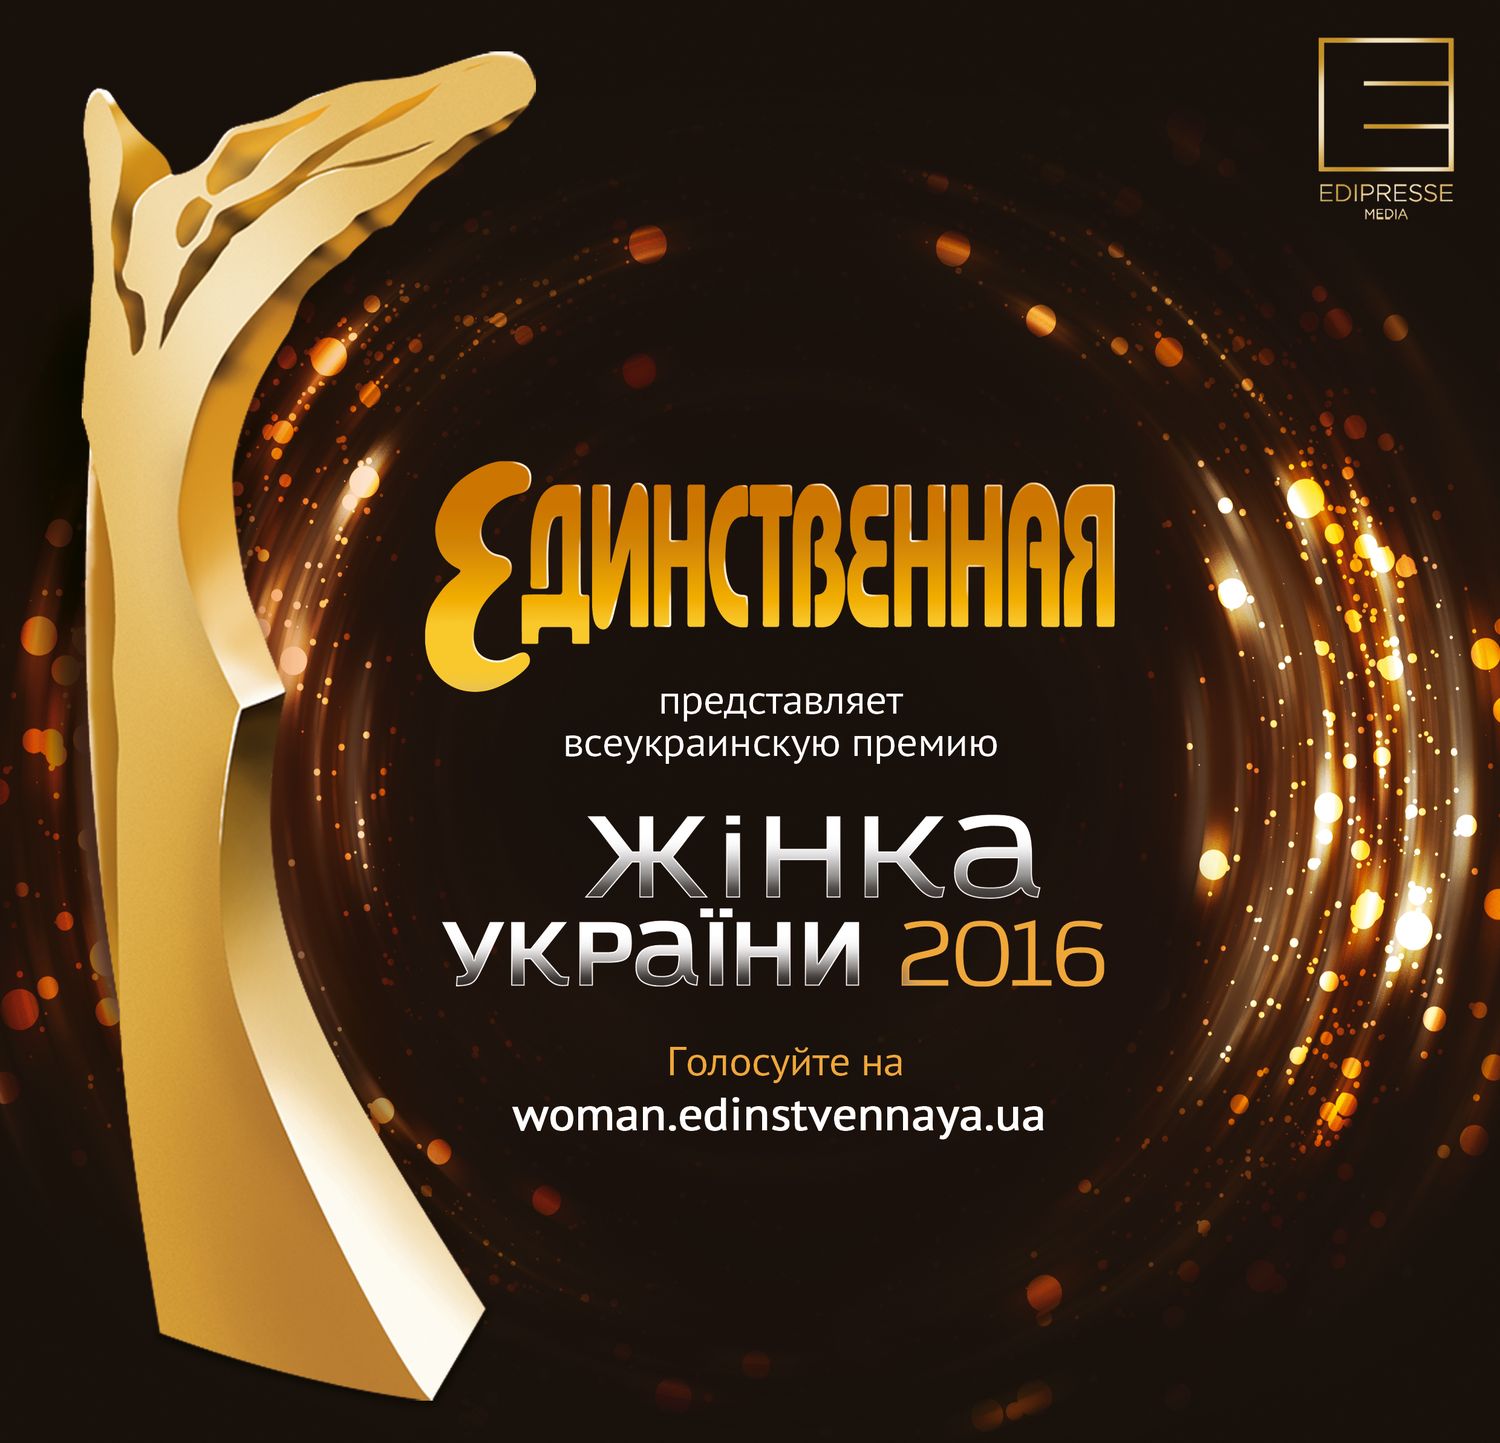 Всеукраинская премия Жінка України 2106